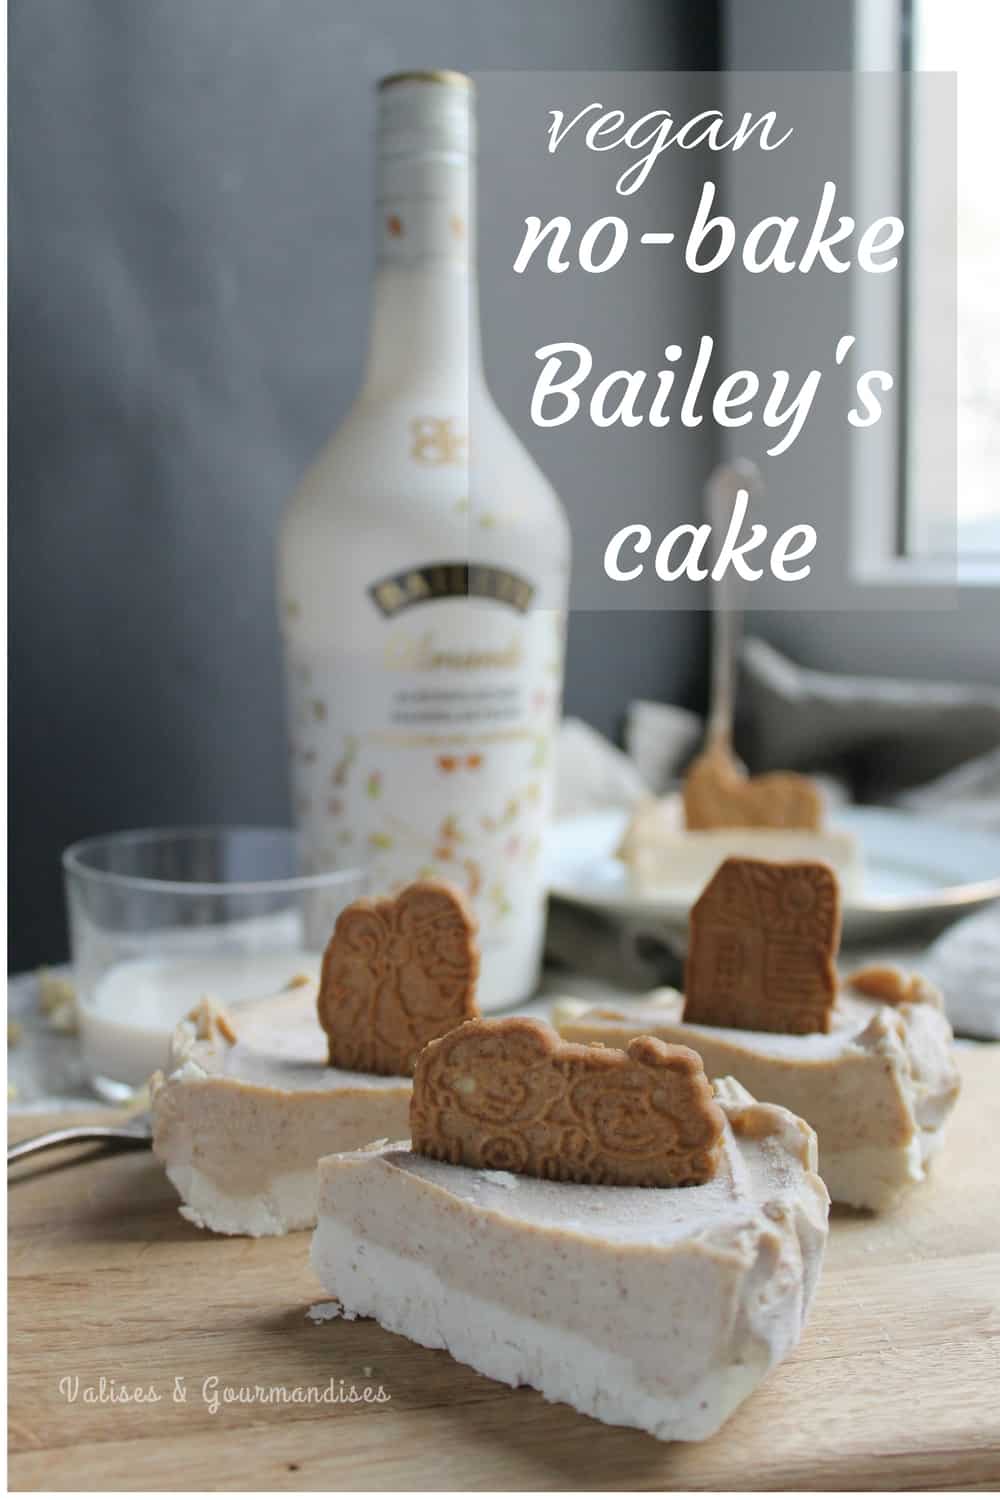 Vegan no-bake Bailey's cake